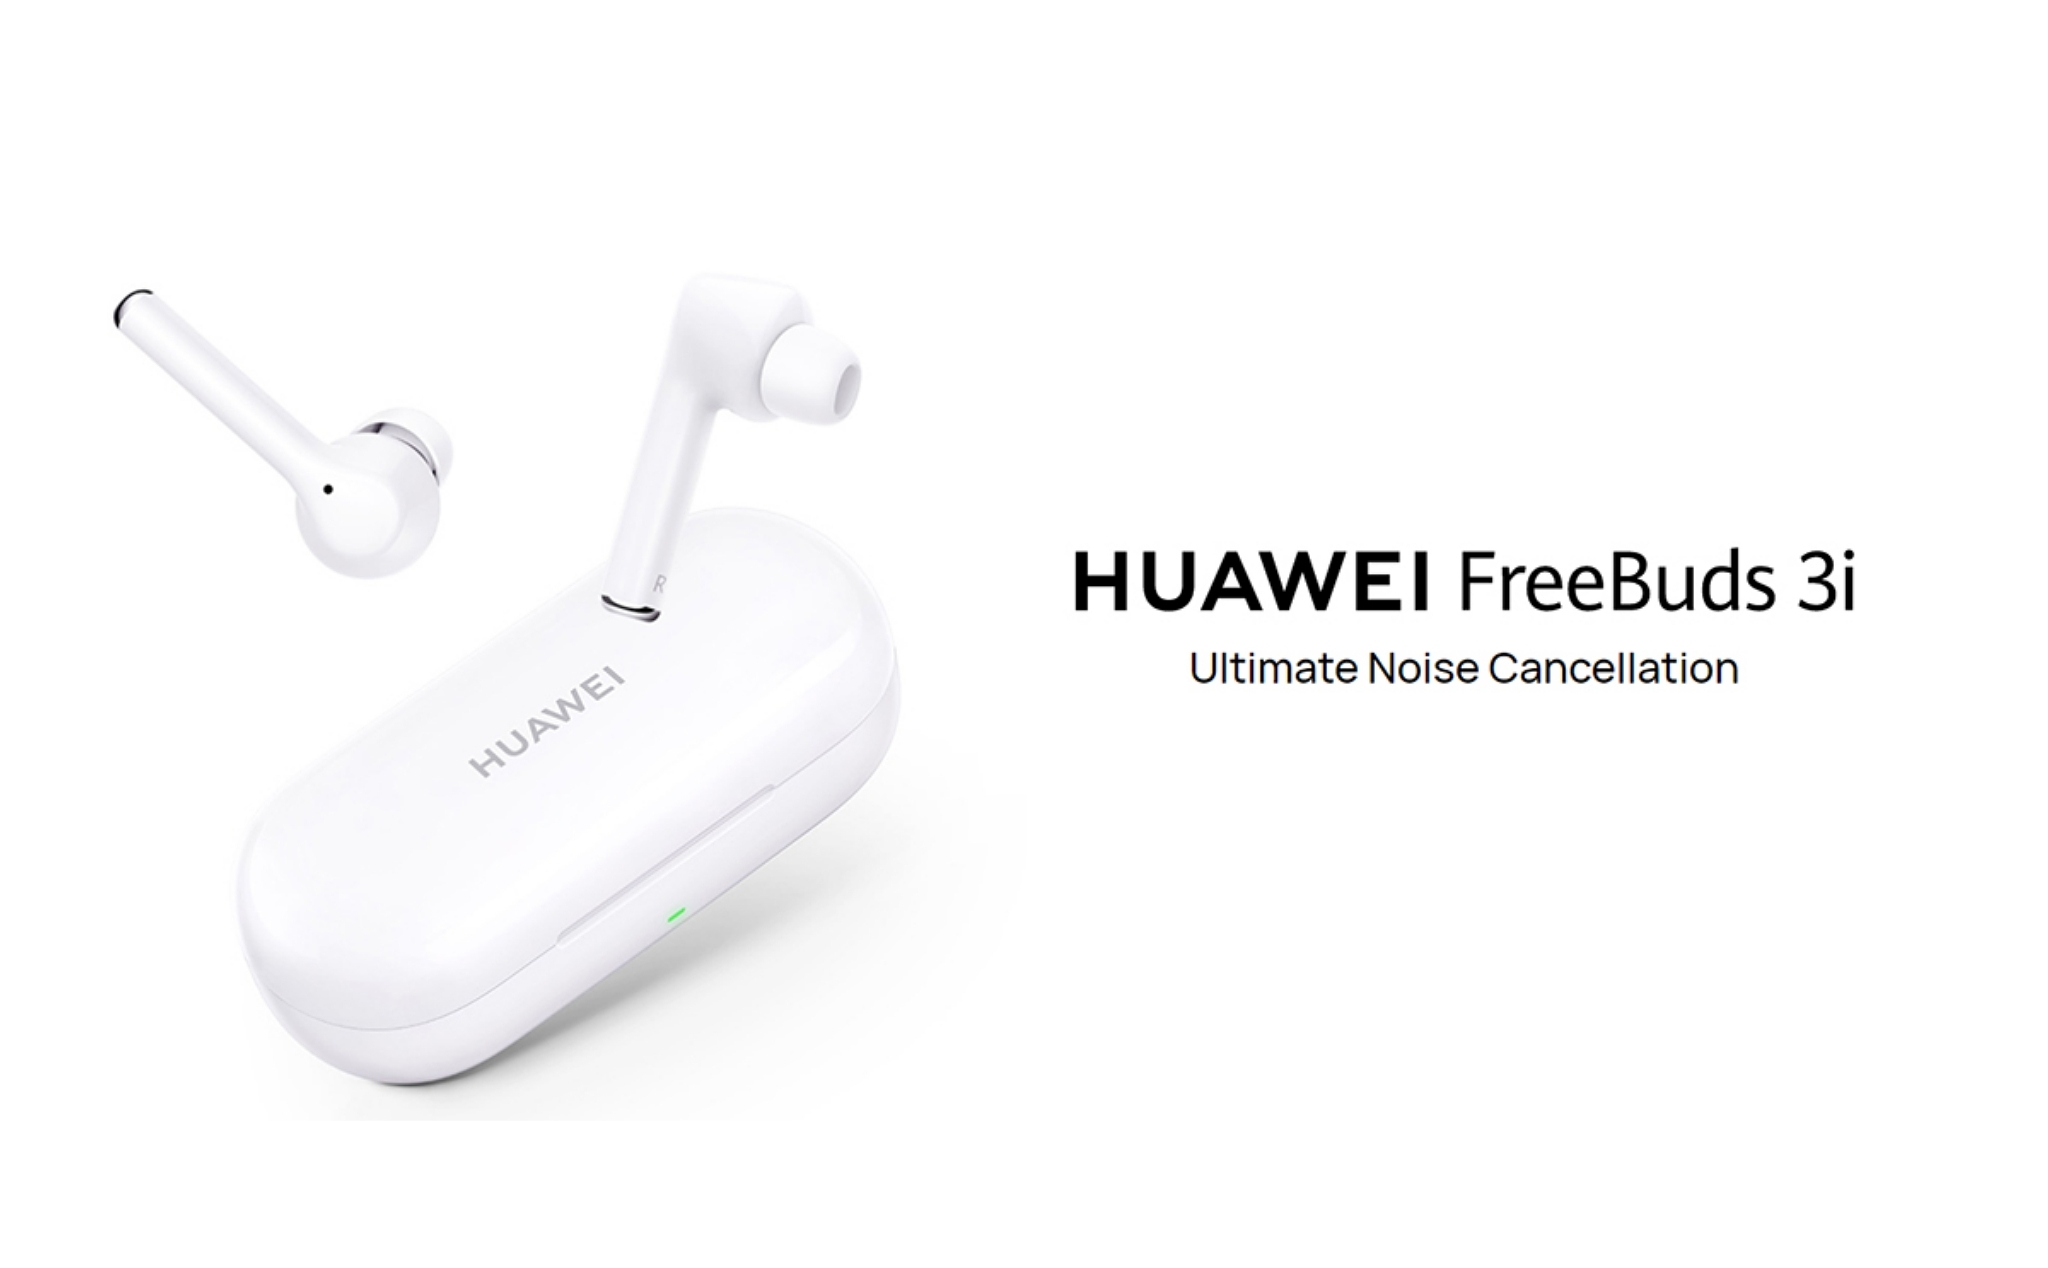 Huawei Freebuds 3i vs Freebuds 3: mới hơn, chống ồn tốt hơn, giảm vài tính năng, giá rẻ hơn